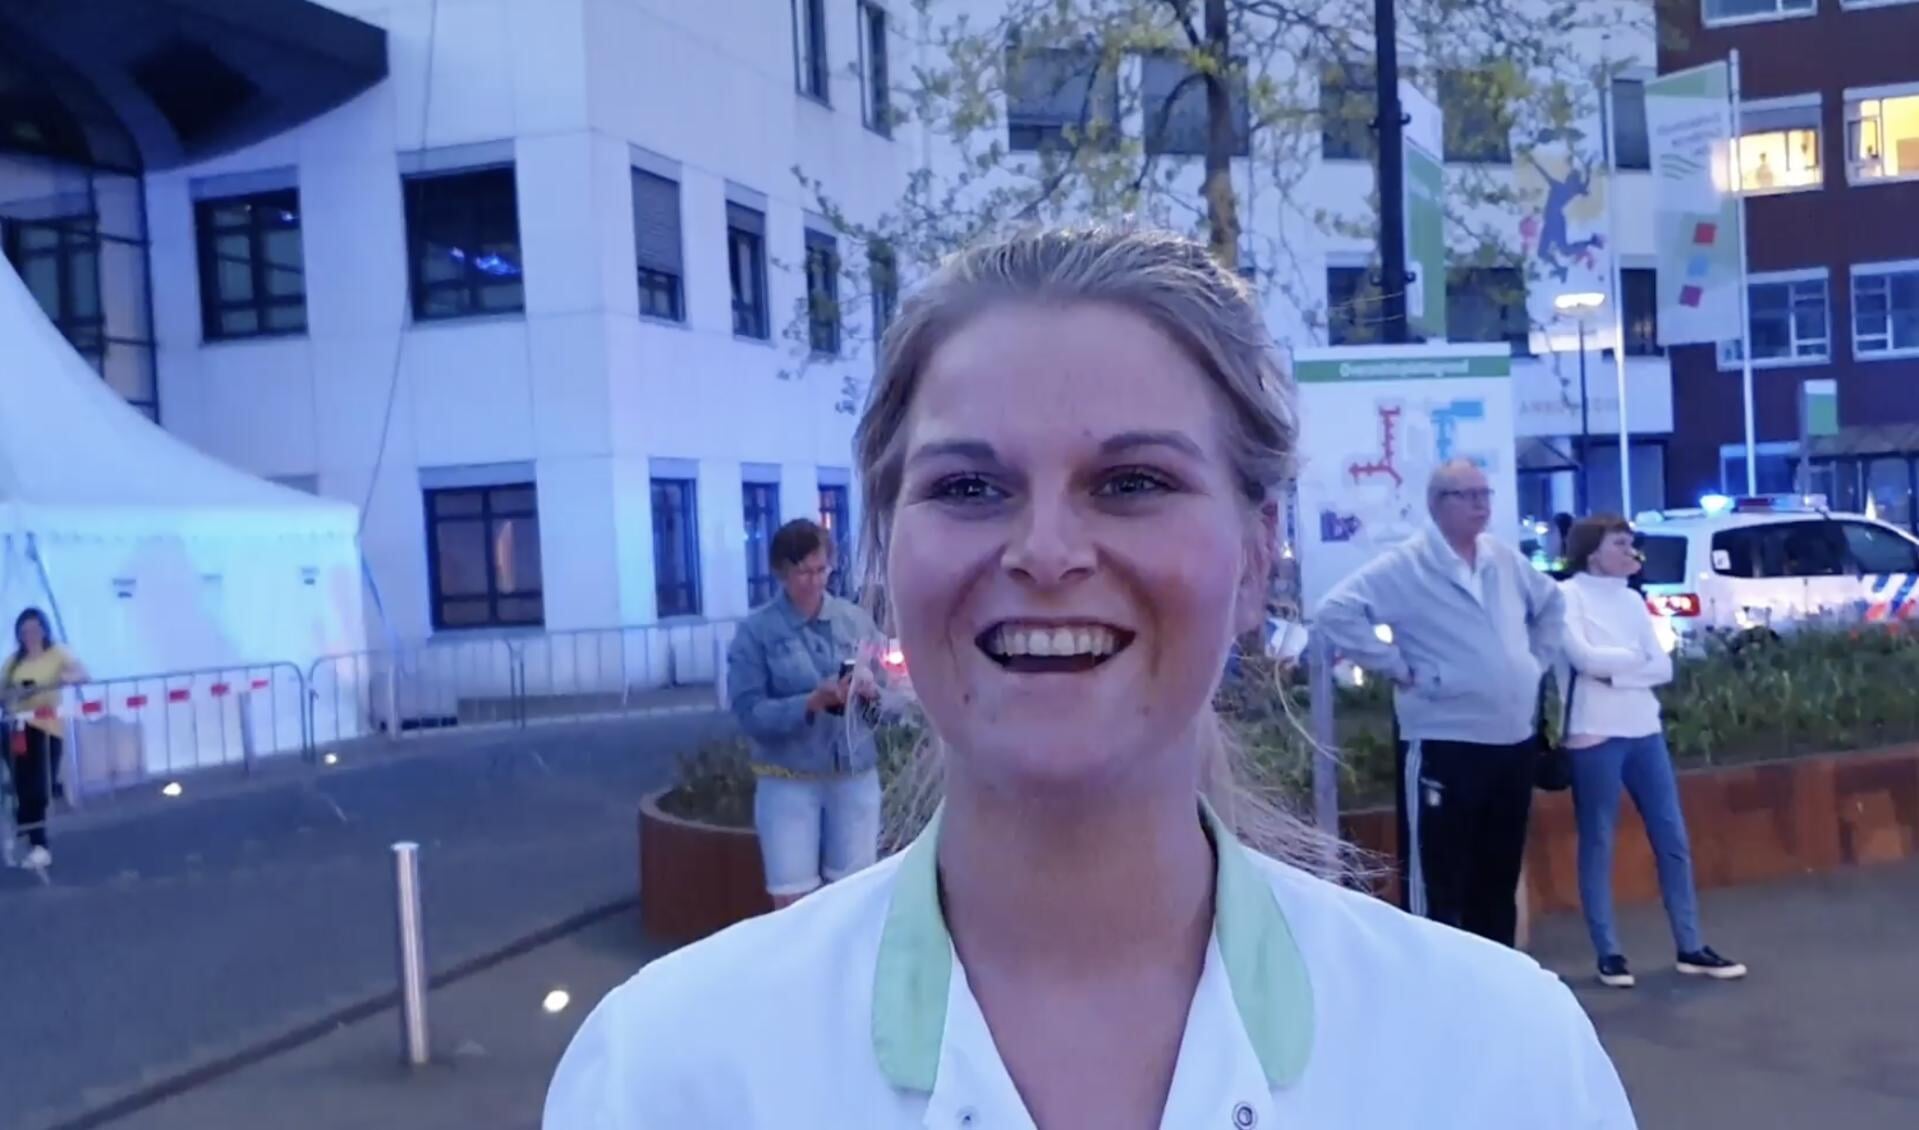 Ziekenhuismedewerker Nienke van Manen reageert blij verrast in de video (screenshot). 